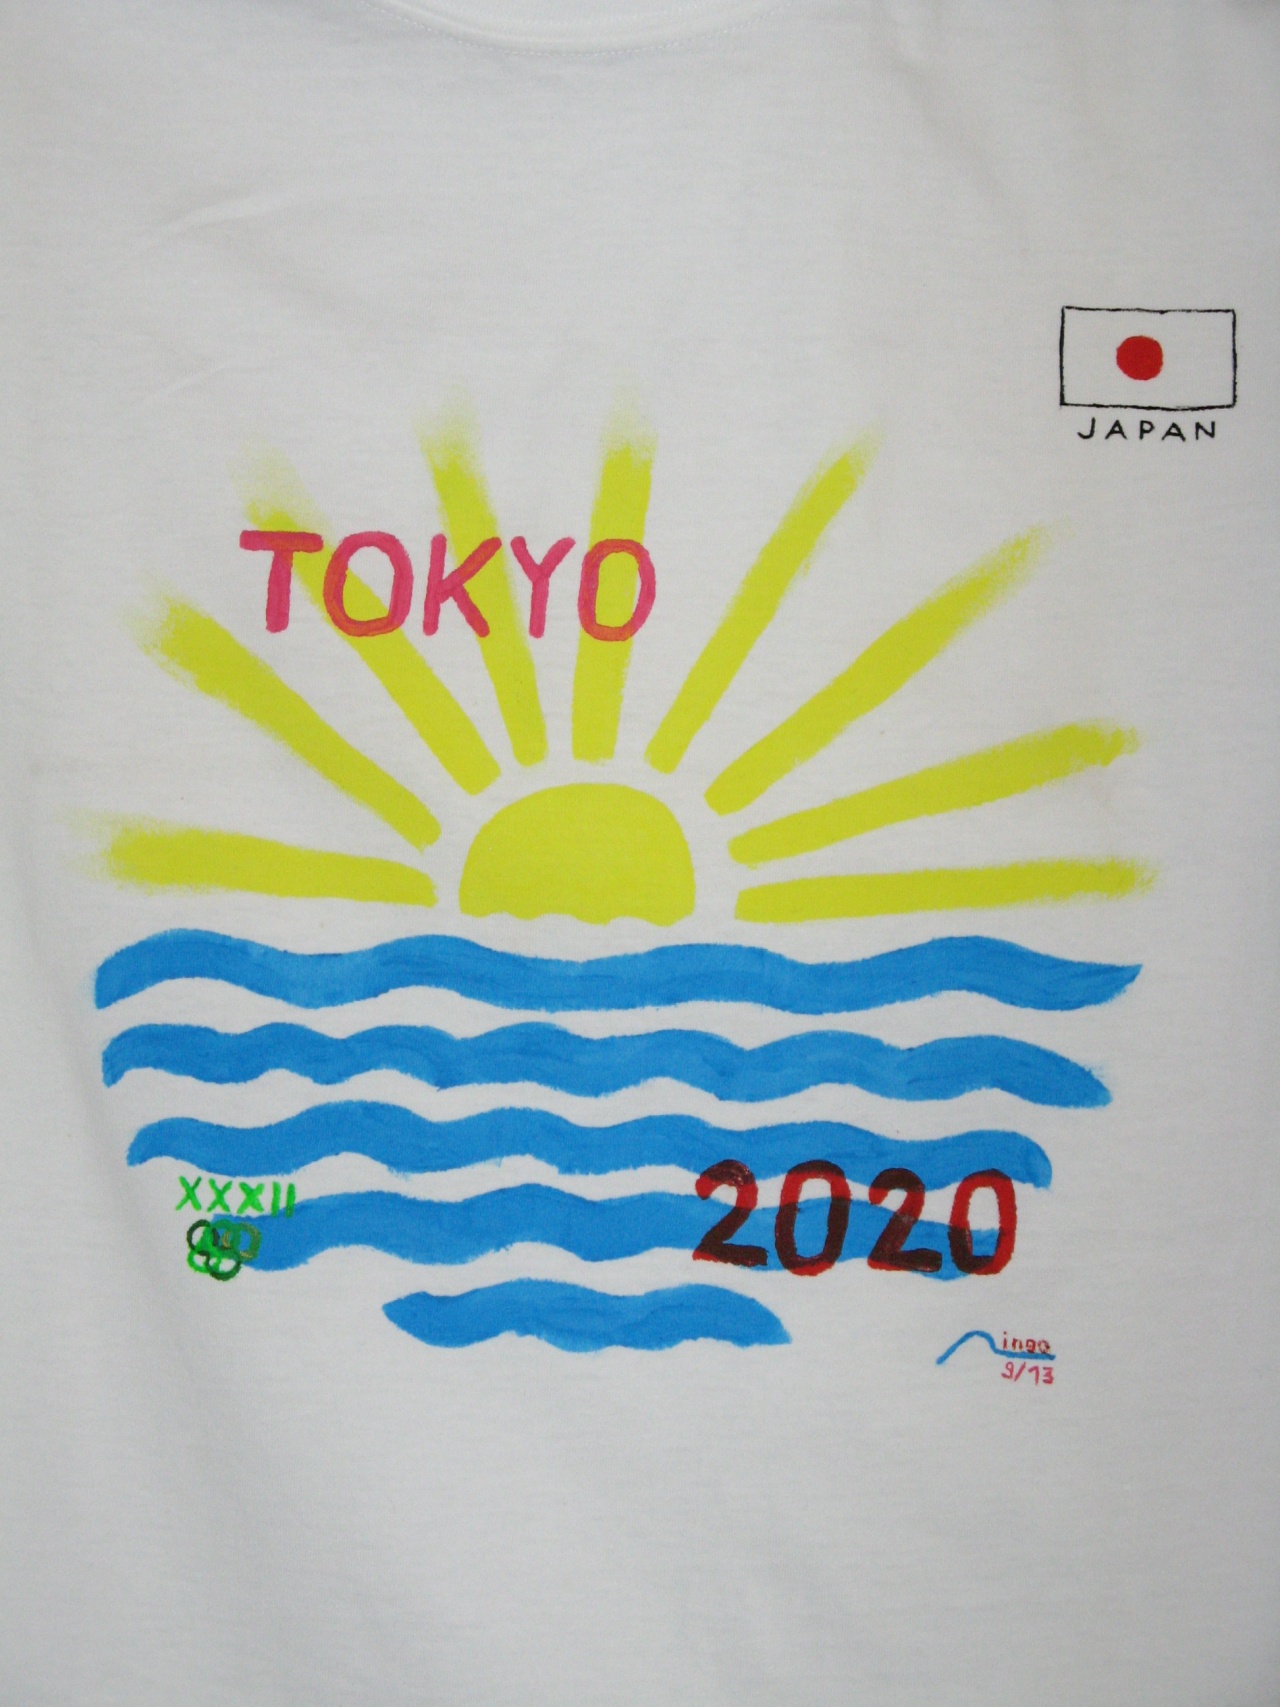 Tokyo 2020 closeup